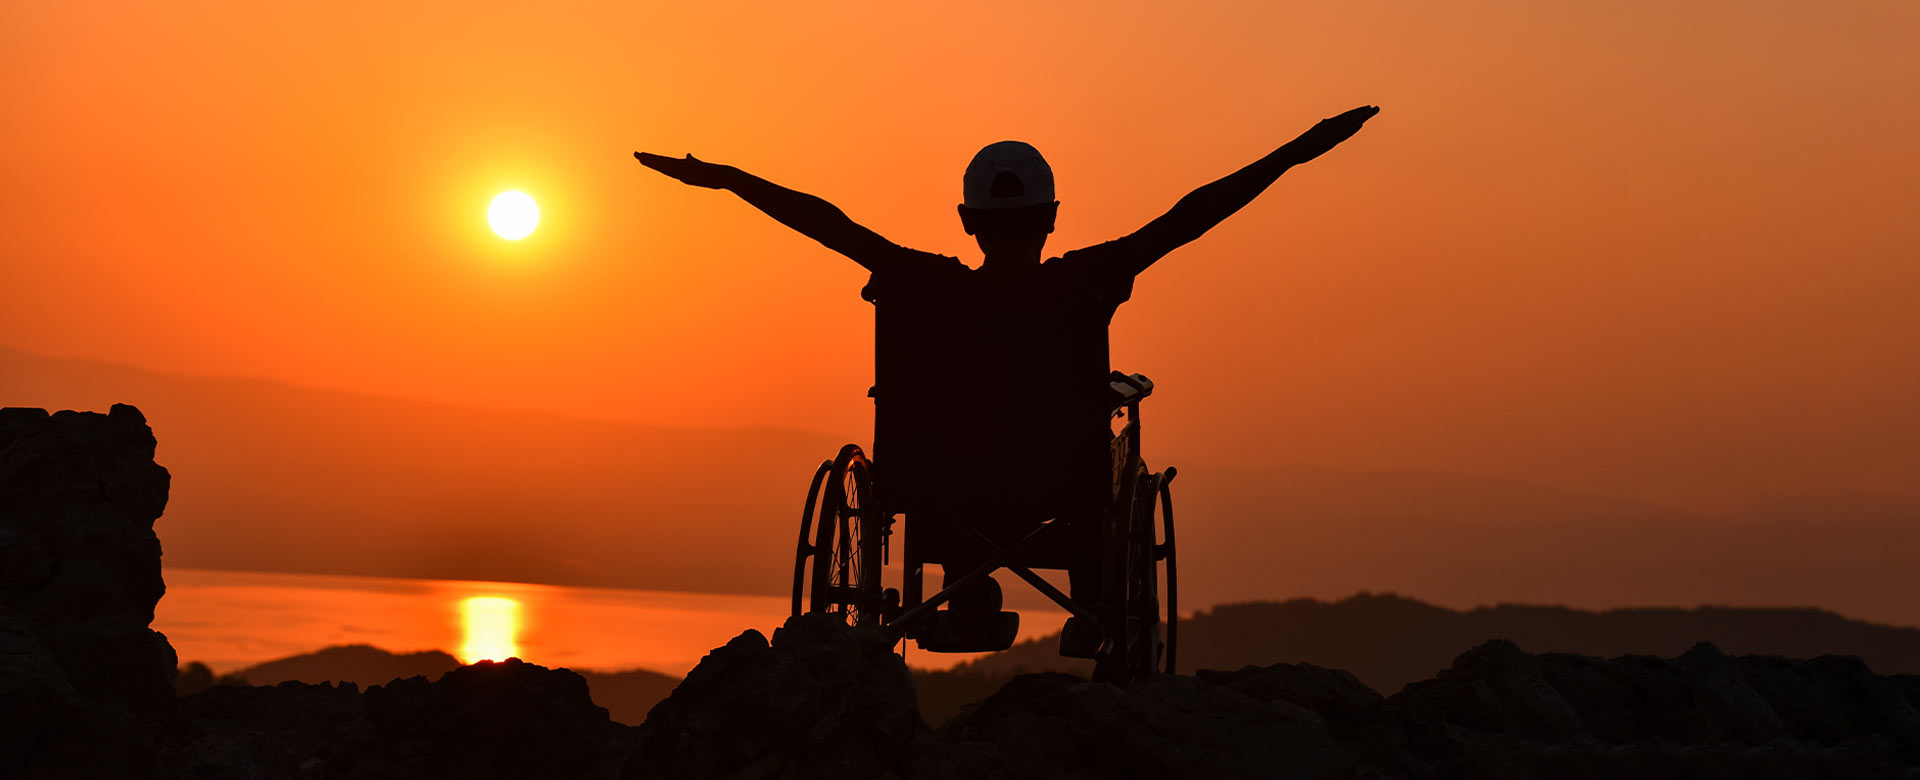 Immagine di una persona con disabilità su sedia a rotelle